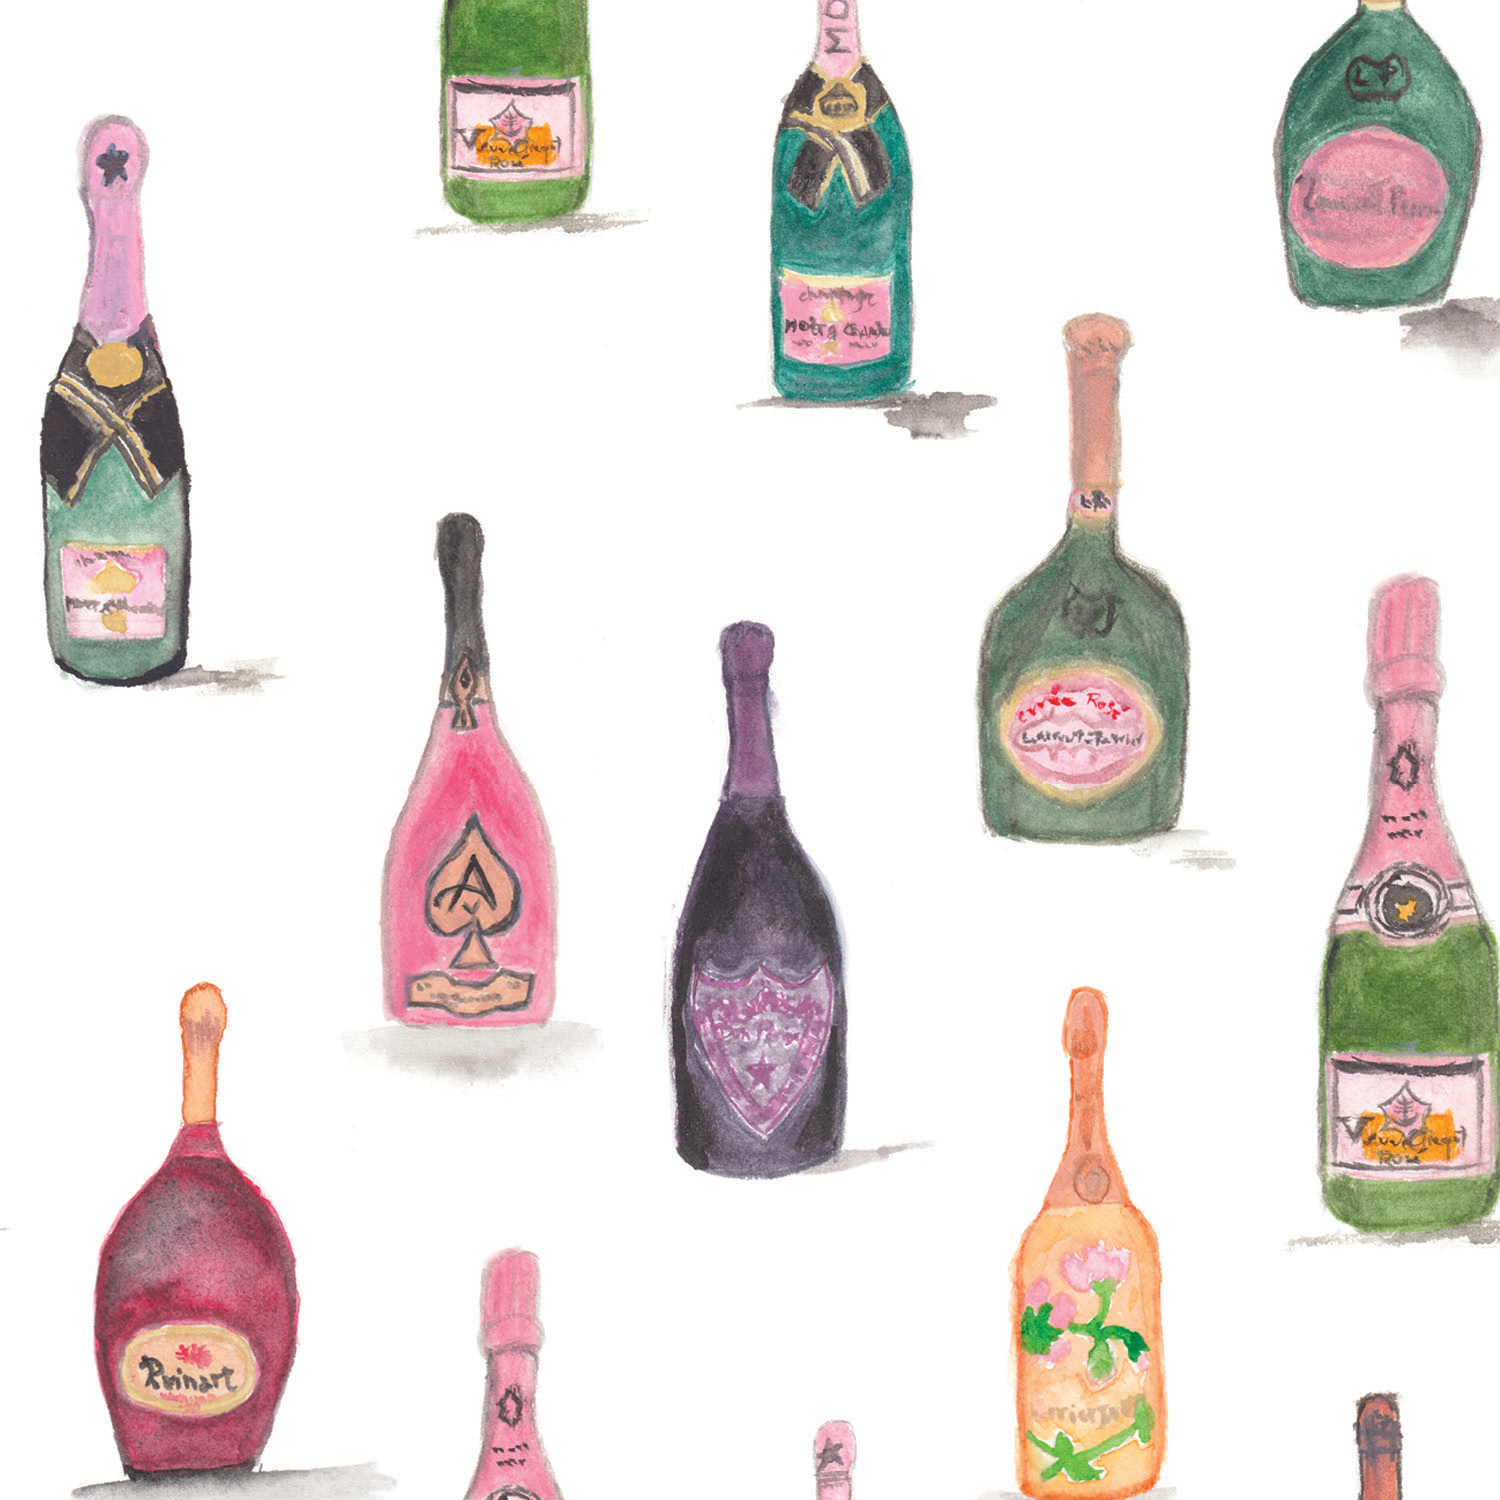 Champagne Rosé - Napperons de papier / Paper placemats